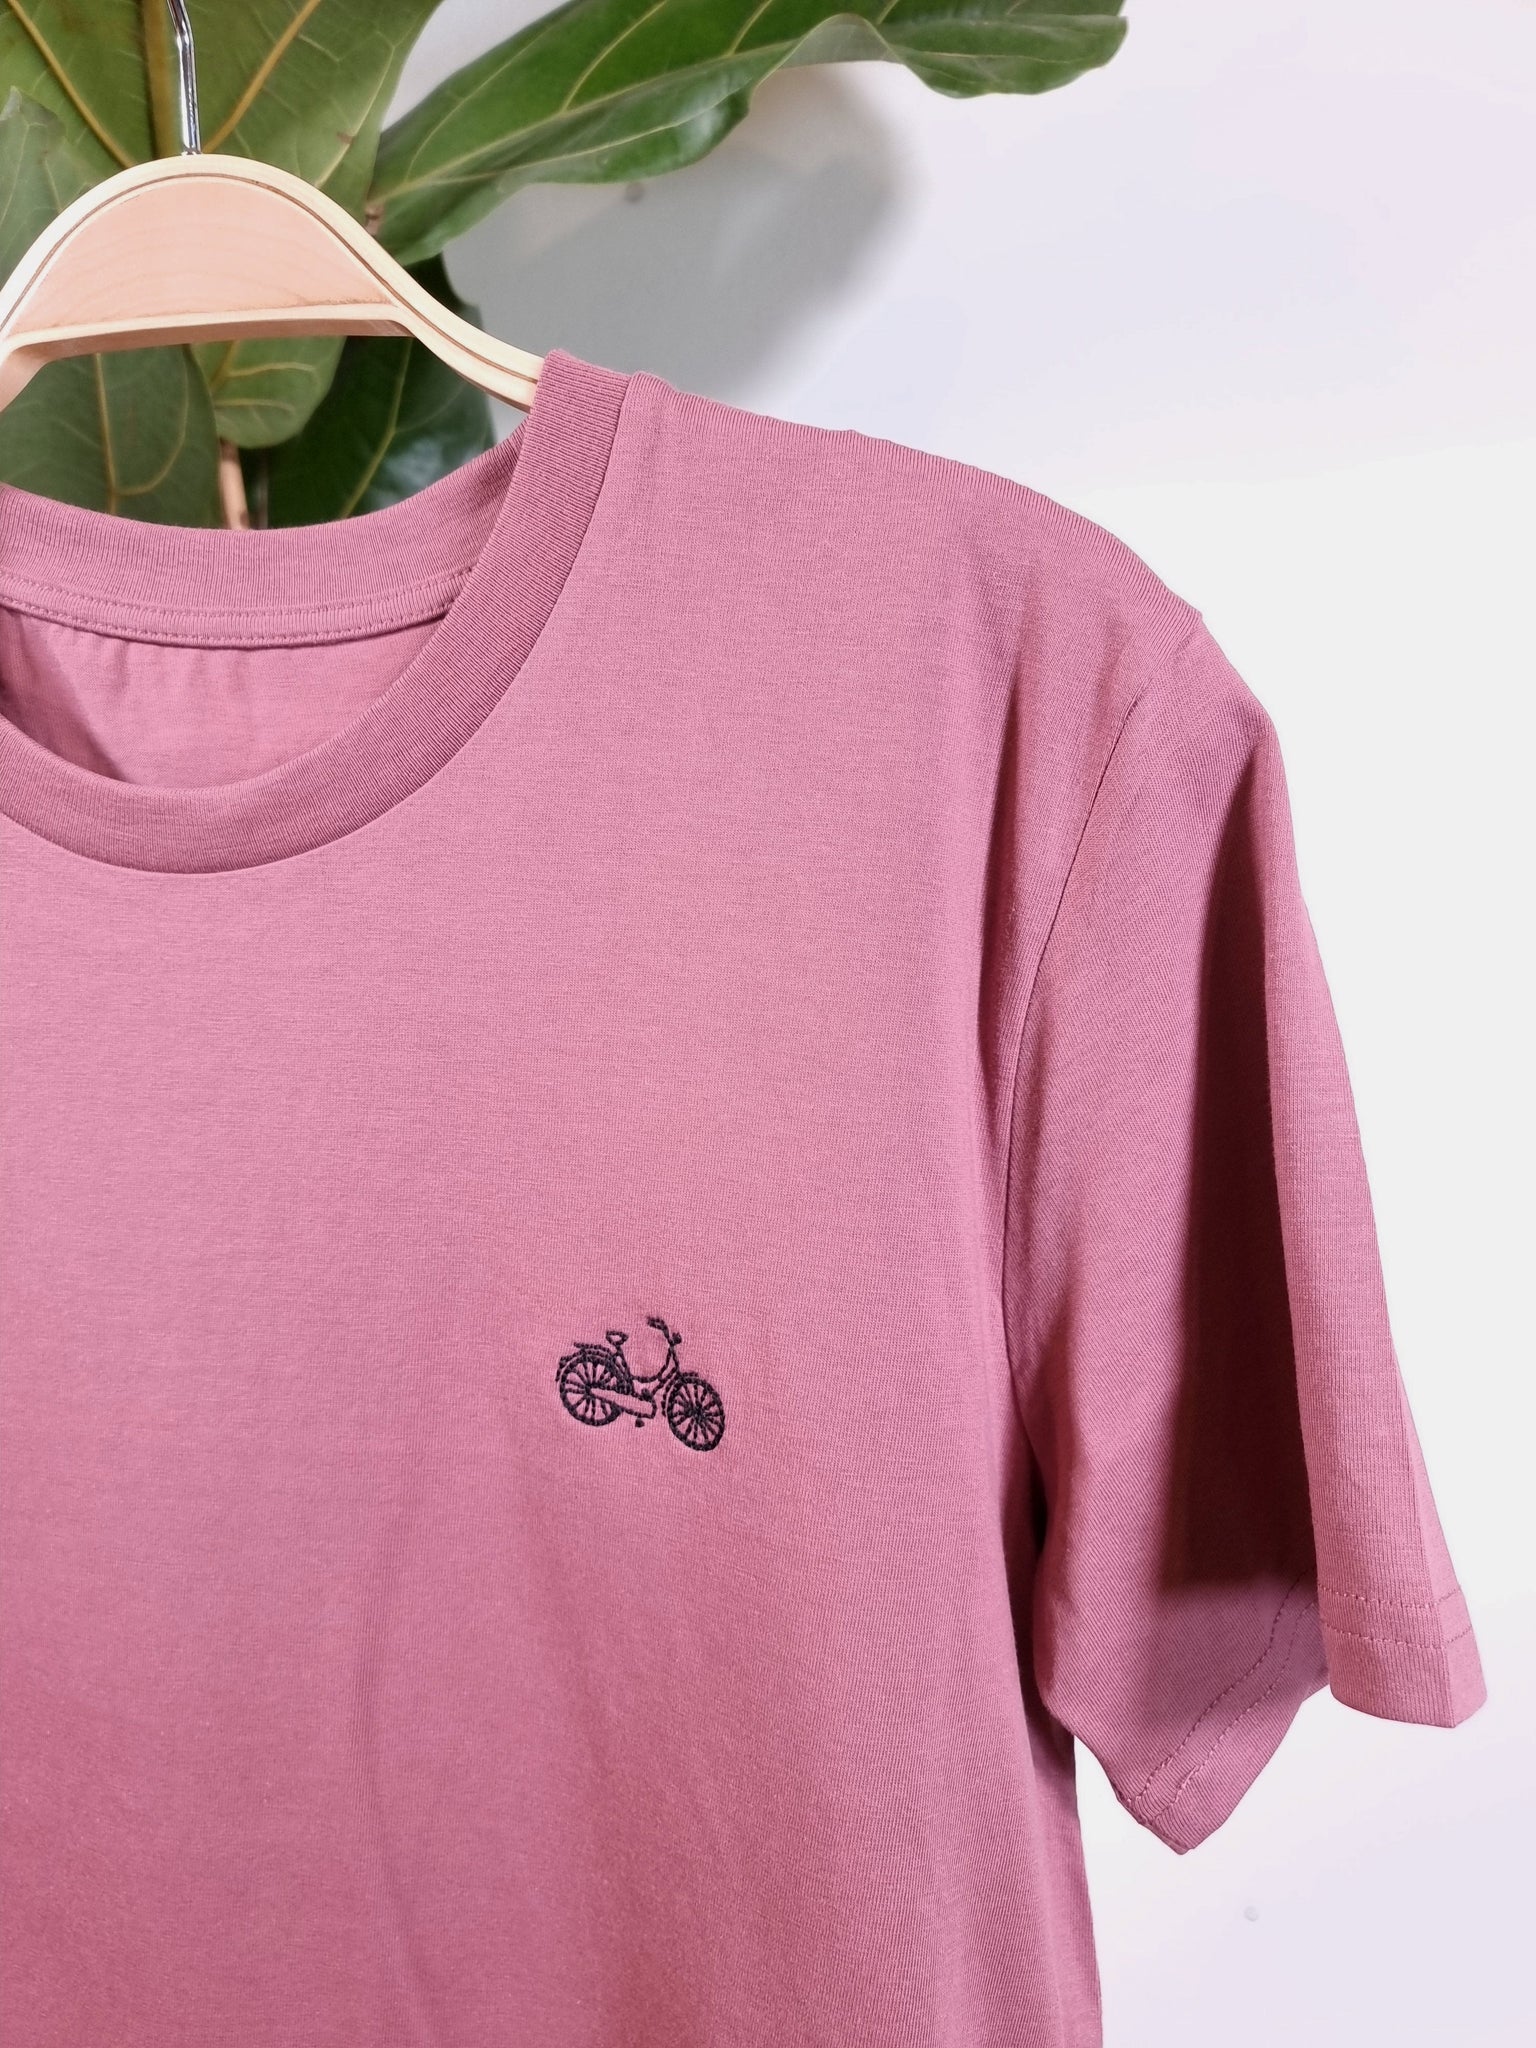 fiets hibiscus rose organic cotton unisex t-shirt te koop in de webshop van Almost Summer Amsterdam